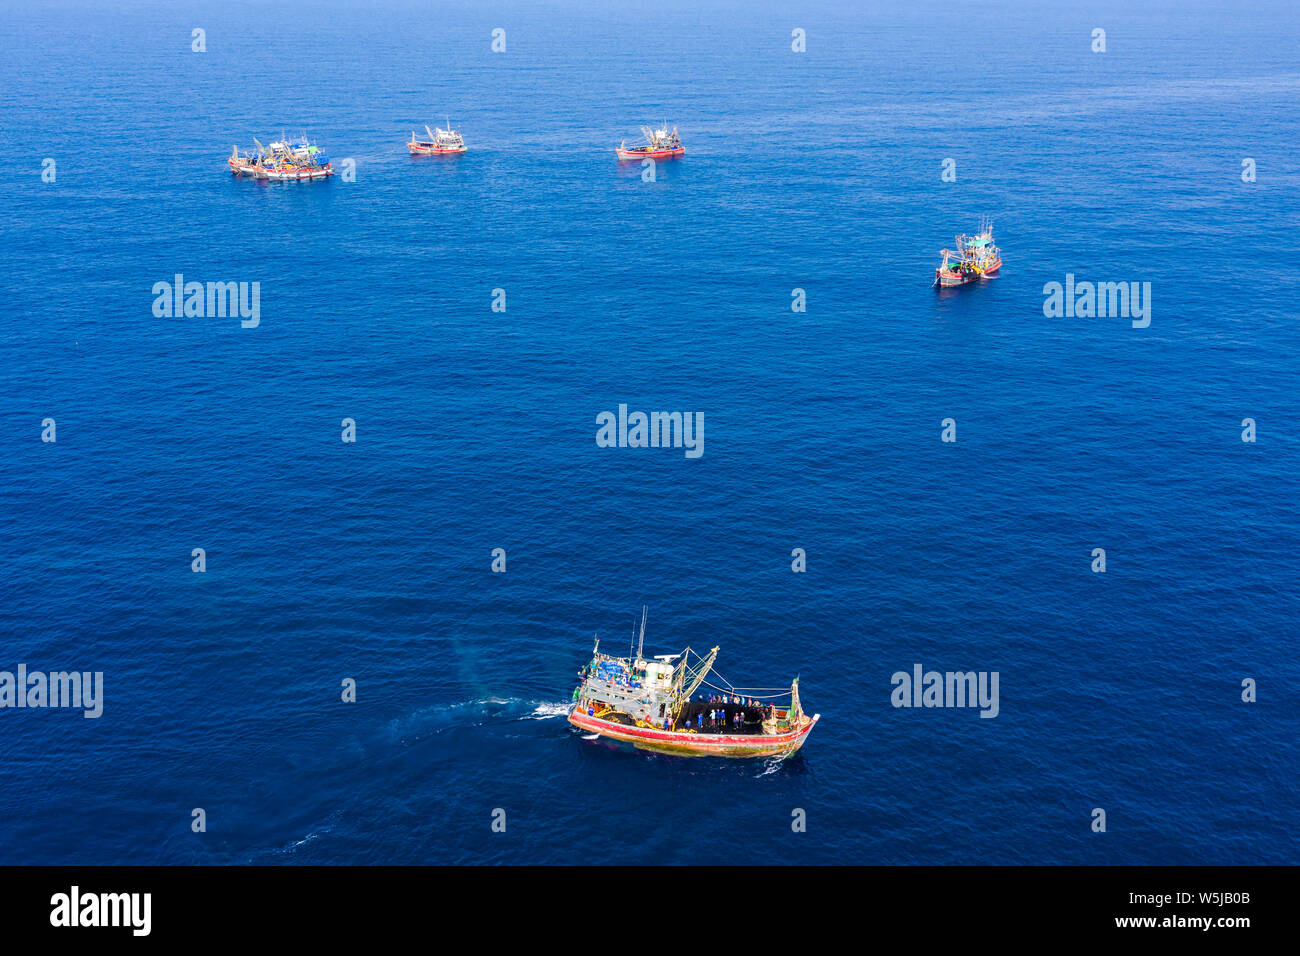 La surpêche - vue aérienne d'une grande flotte de chalutiers de pêche qui travaillent ensemble dans une petite zone de la mer d'Andaman Banque D'Images